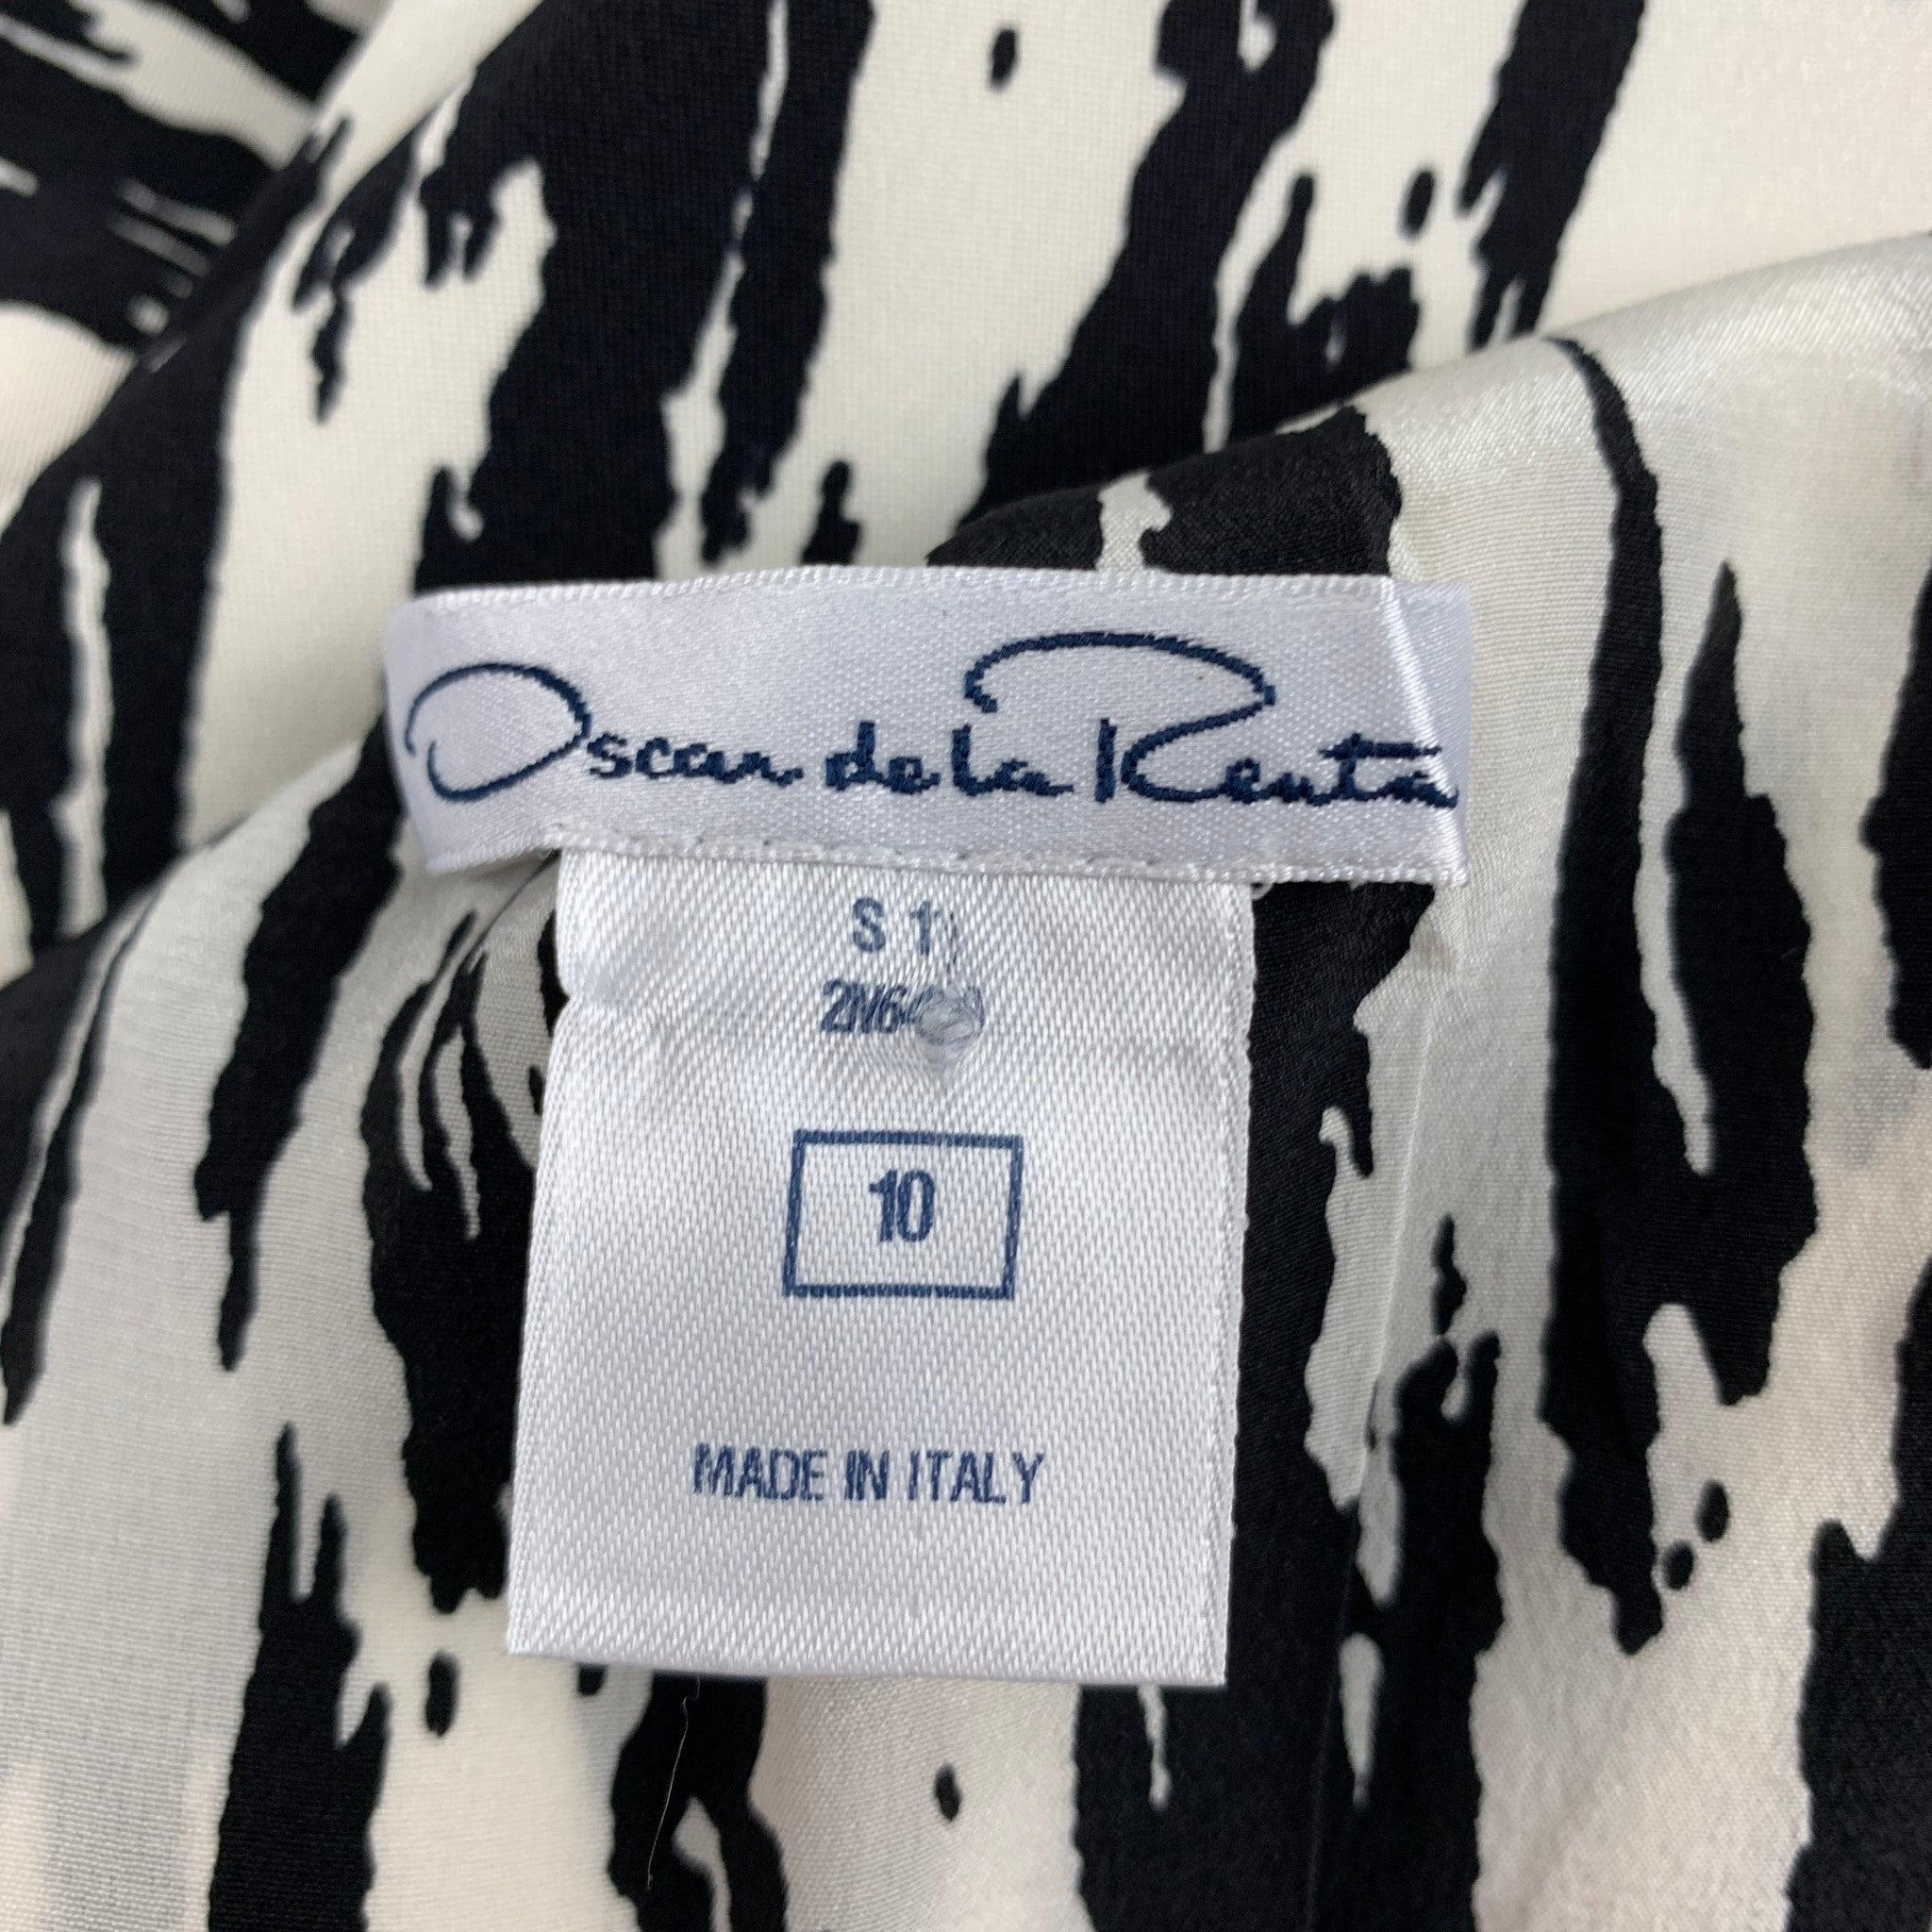 OSCAR DE LA RENTA SS 11 Size 10 Black White Silk Print Sleeveless Sheath Dress For Sale 2